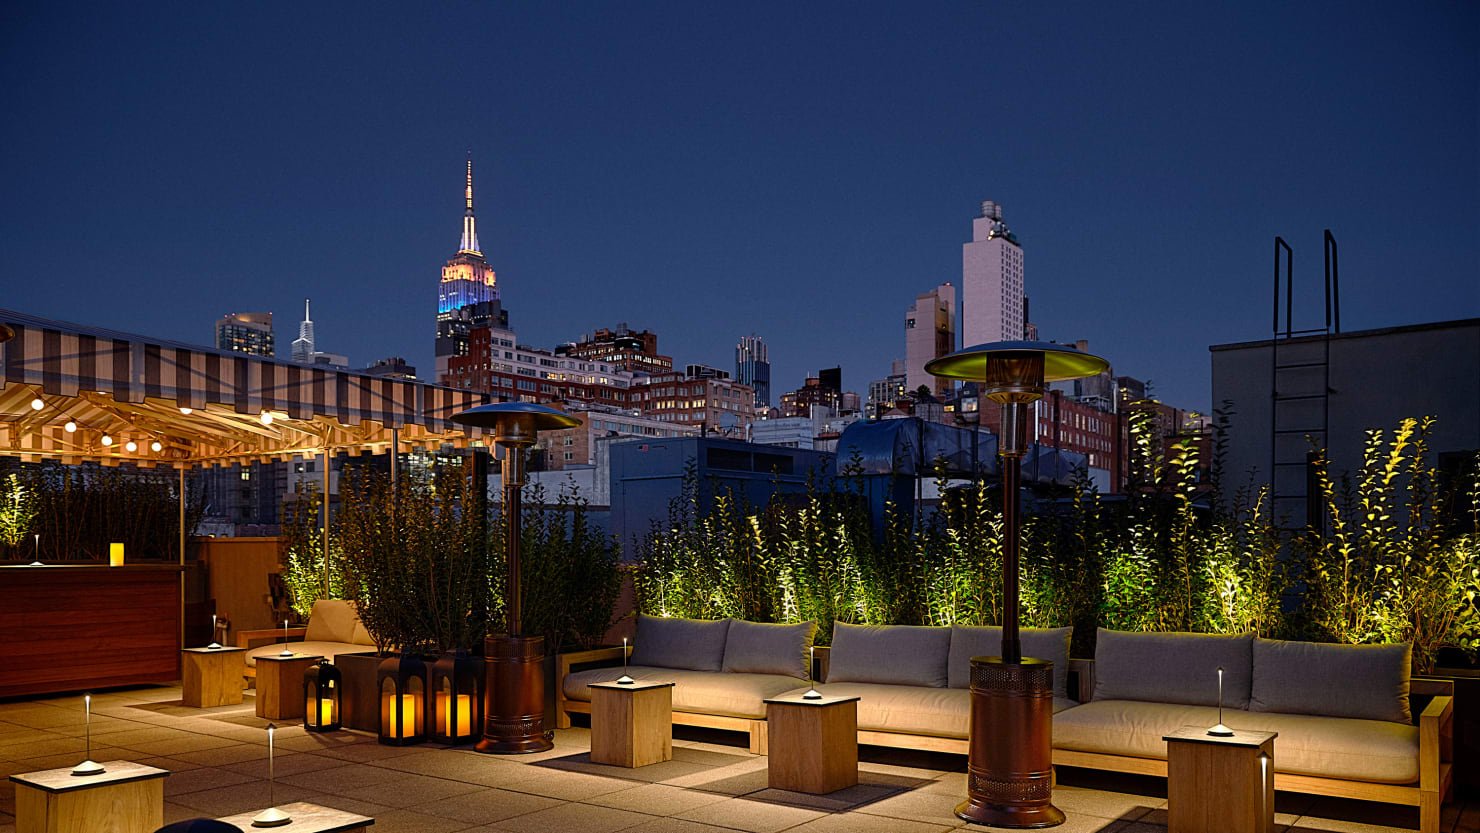 La ciudad de Nueva York acaba de conseguir un lindo hotel de vecindario, y es conveniente